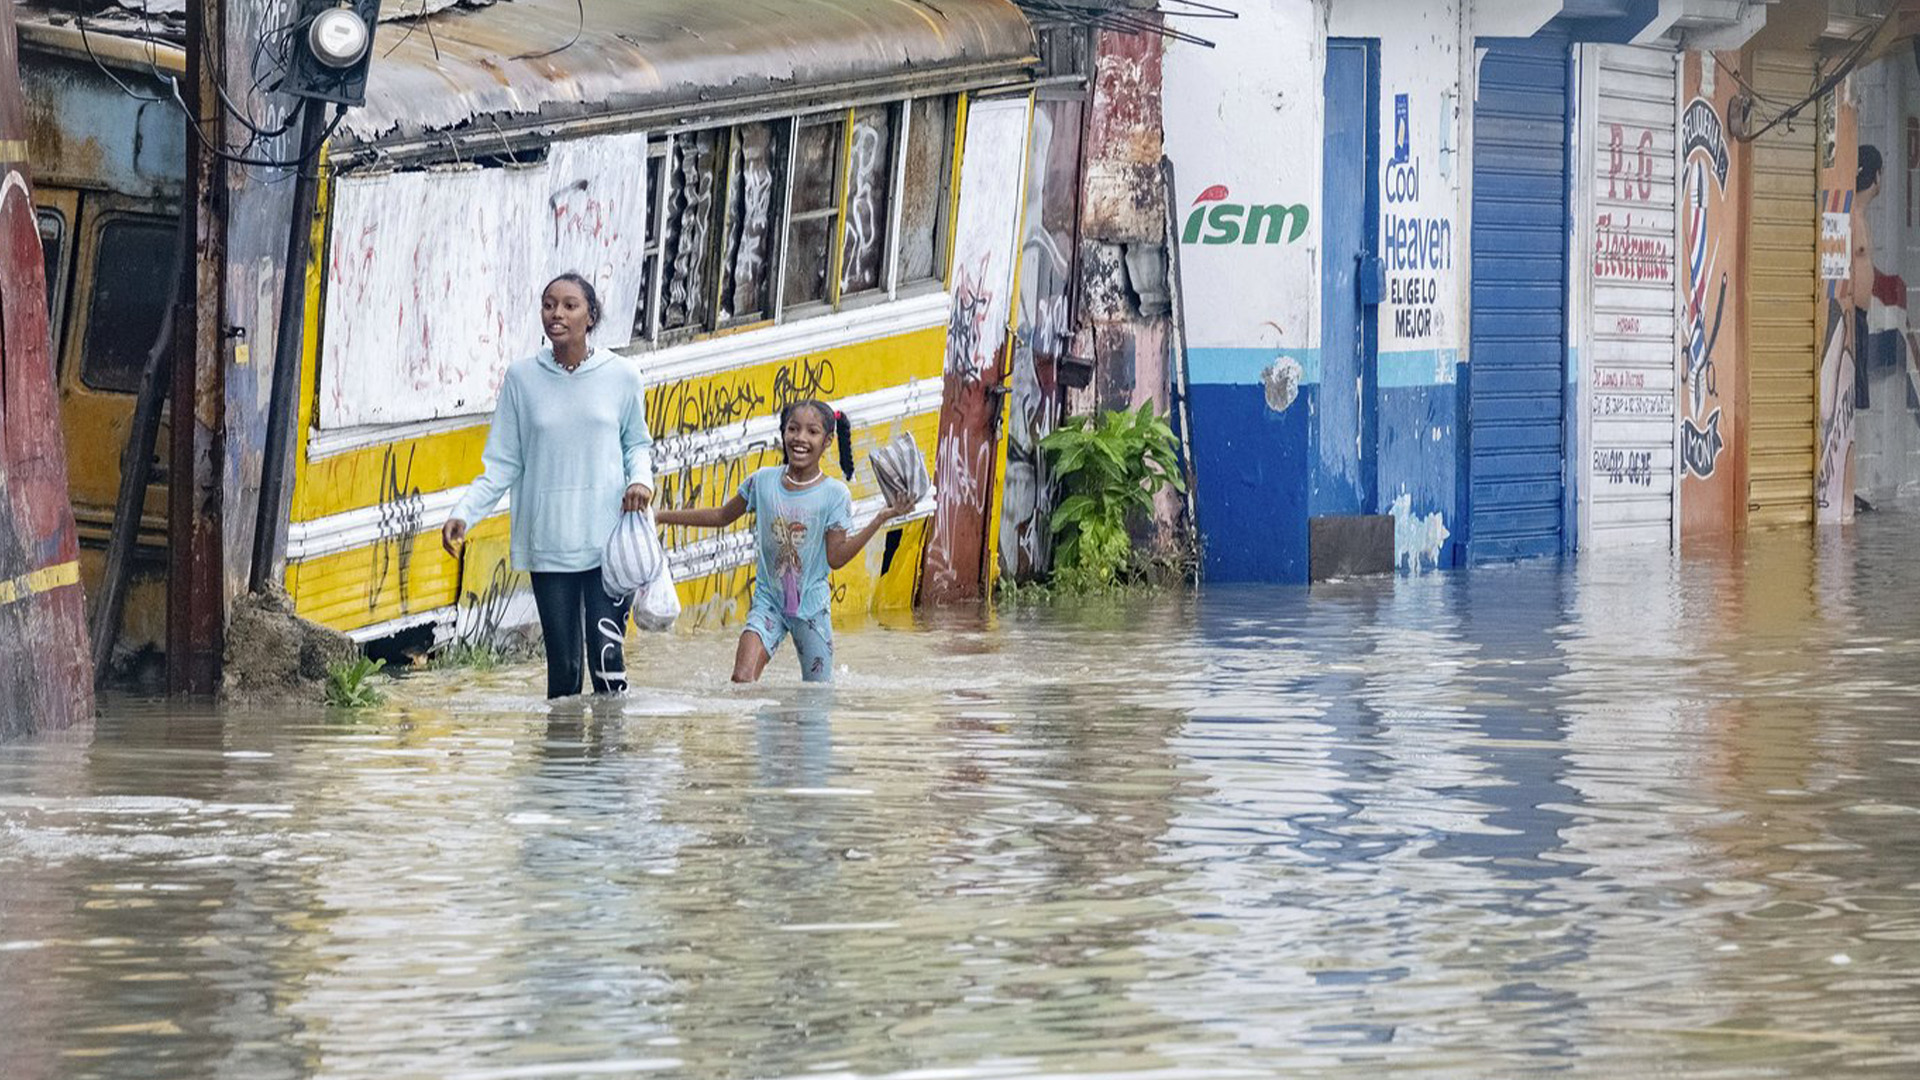 La tempête tropicale Franklin arrive mercredi sur l'île d'Hispaniola partagée par la République dominicaine et Haïti, faisant craindre qu'elle ne déclenche des glissements de terrain meurtriers et de fortes inondations dans les deux pays. 